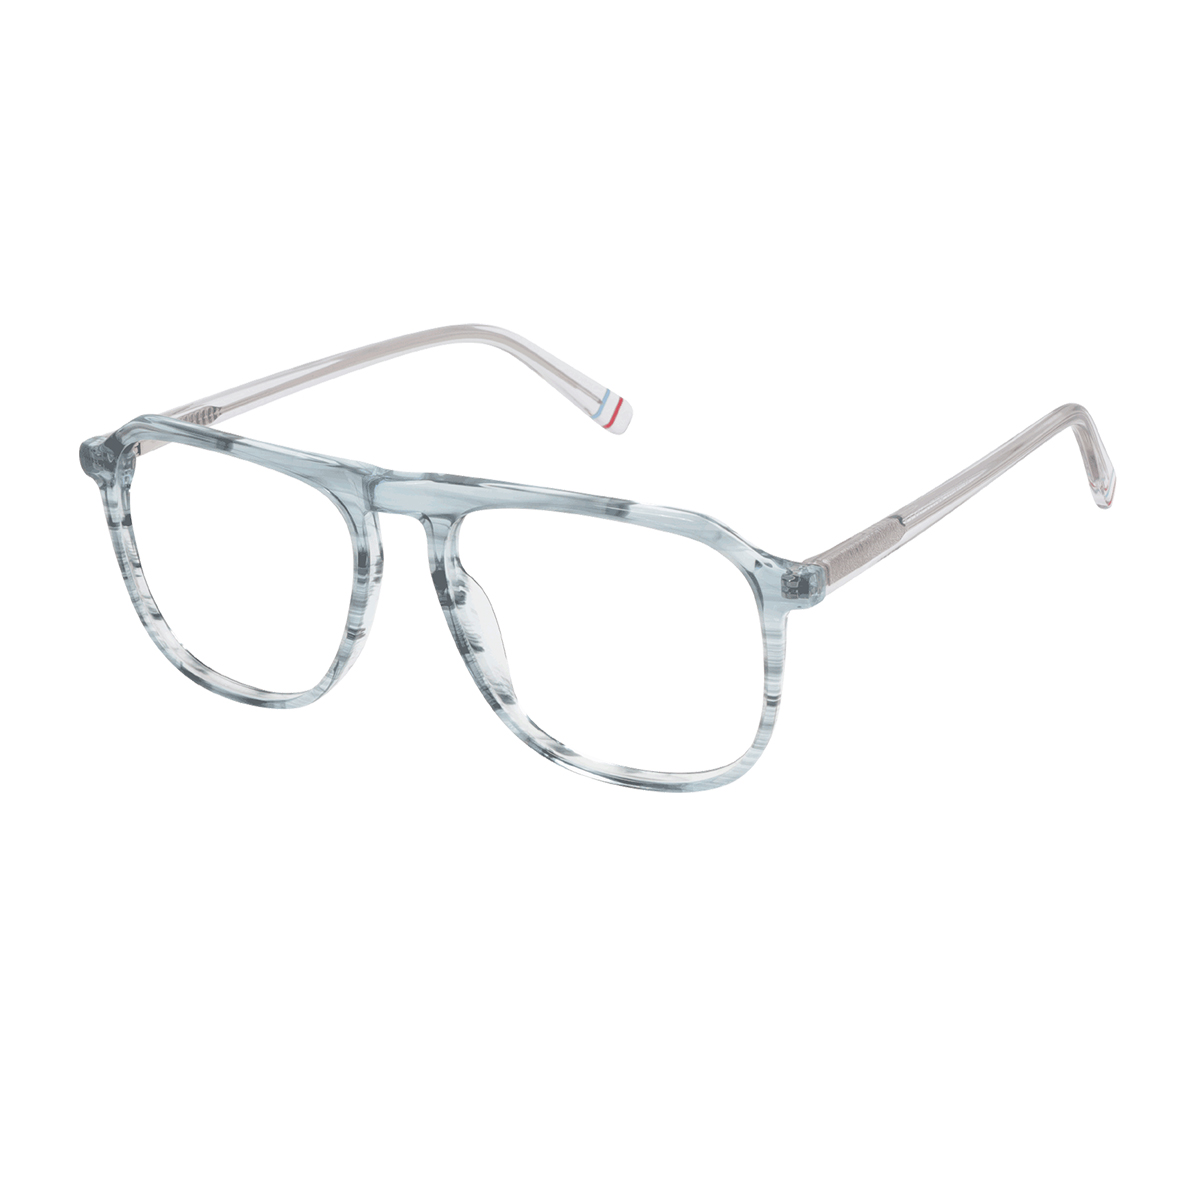 Glenda - Browline Transparent Blue Reading Glasses for Men & Women